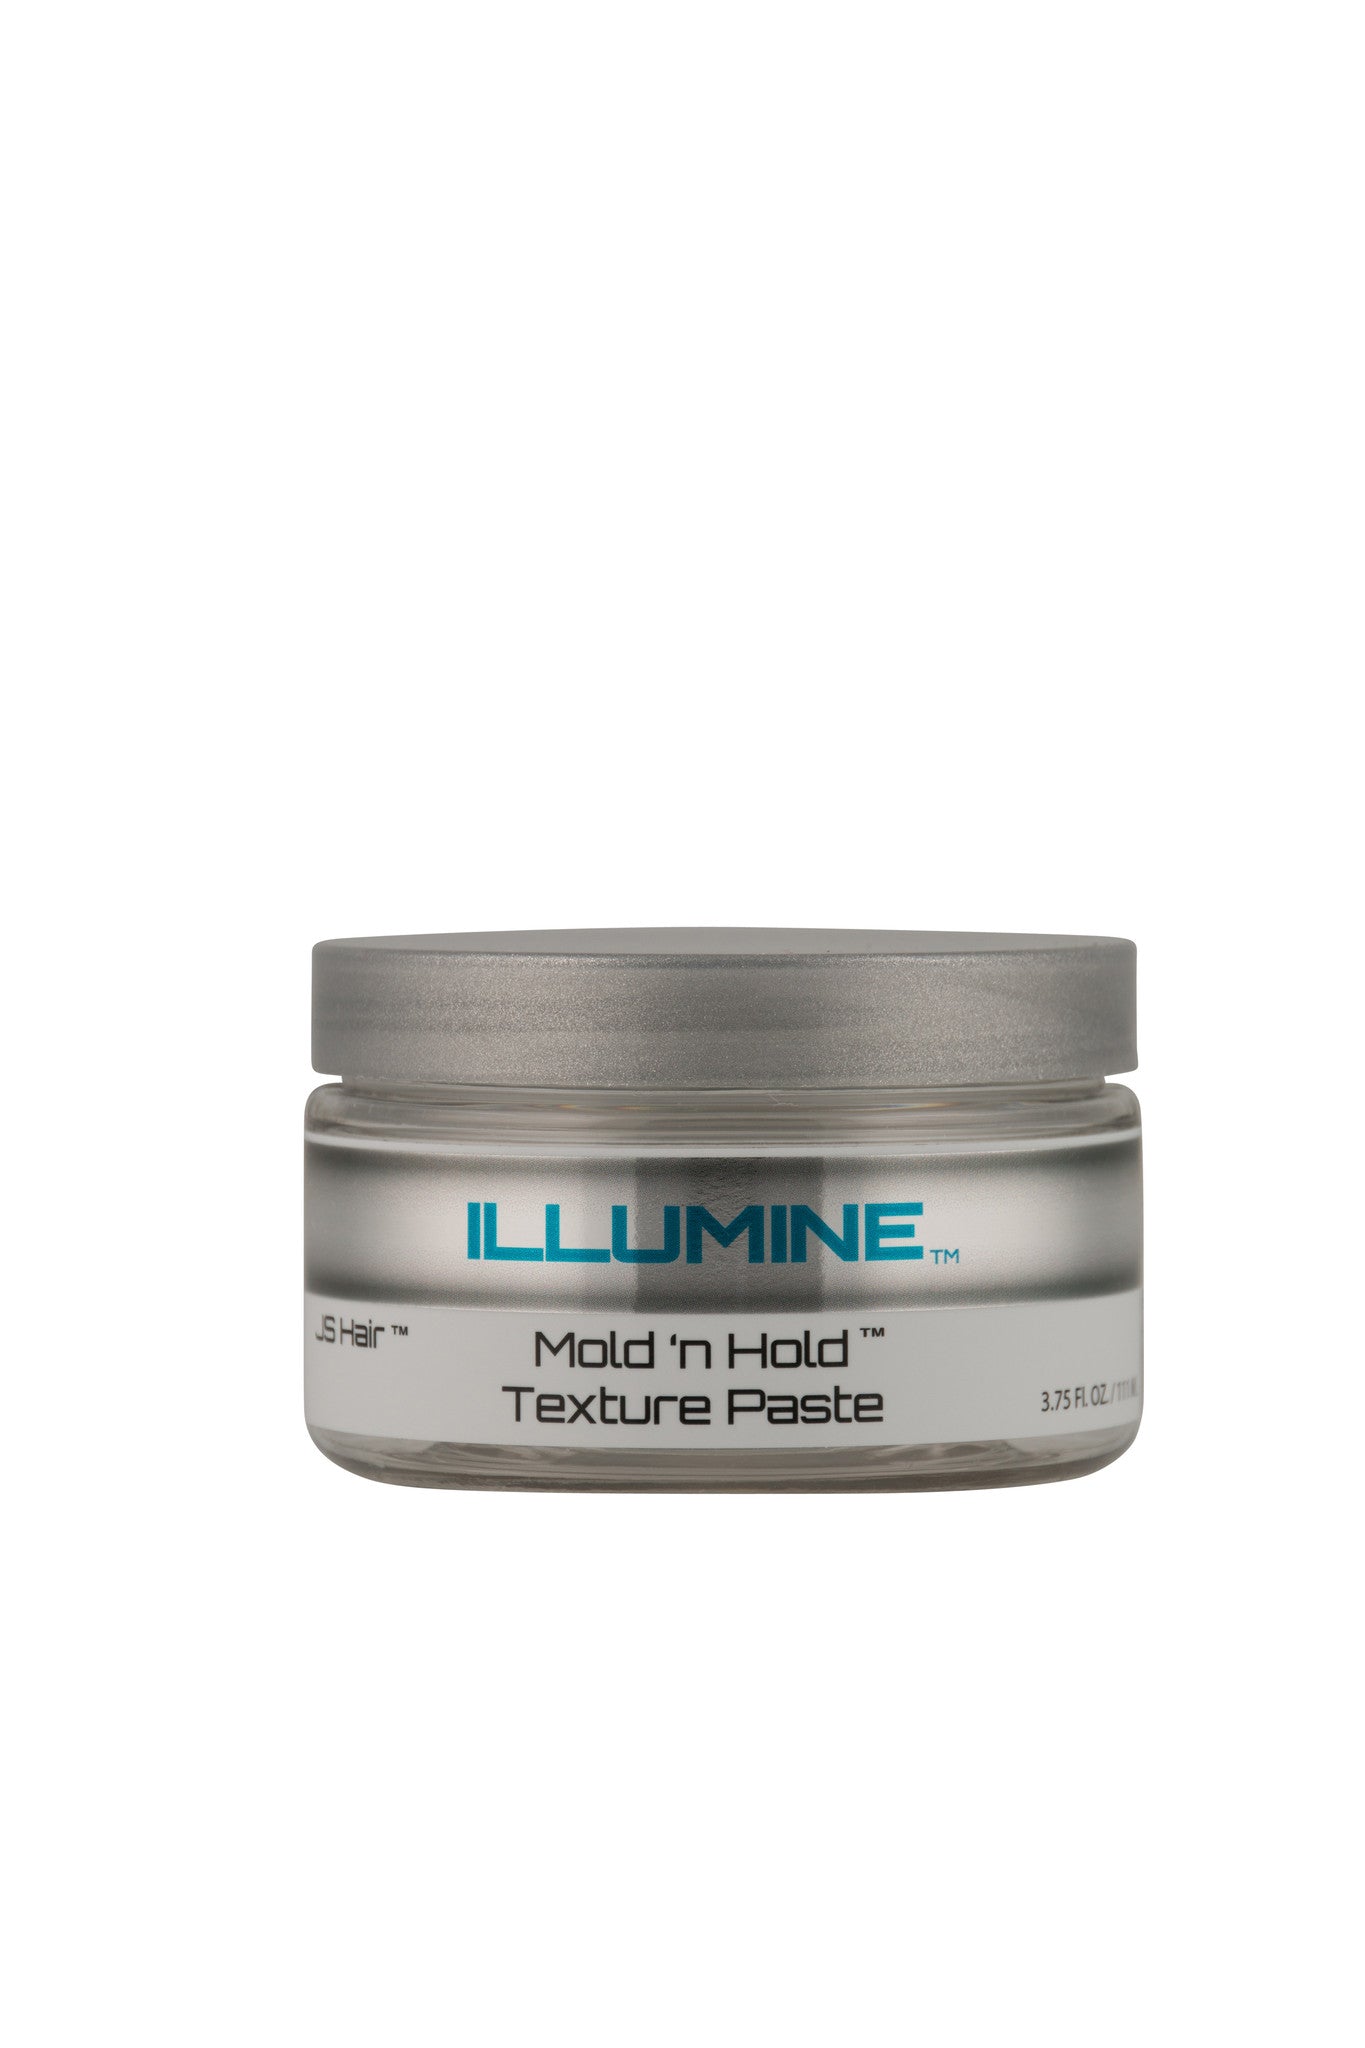 Illumine Mold 'n Hold Texture Paste w/ Illumine-8 Complex – JS Hair